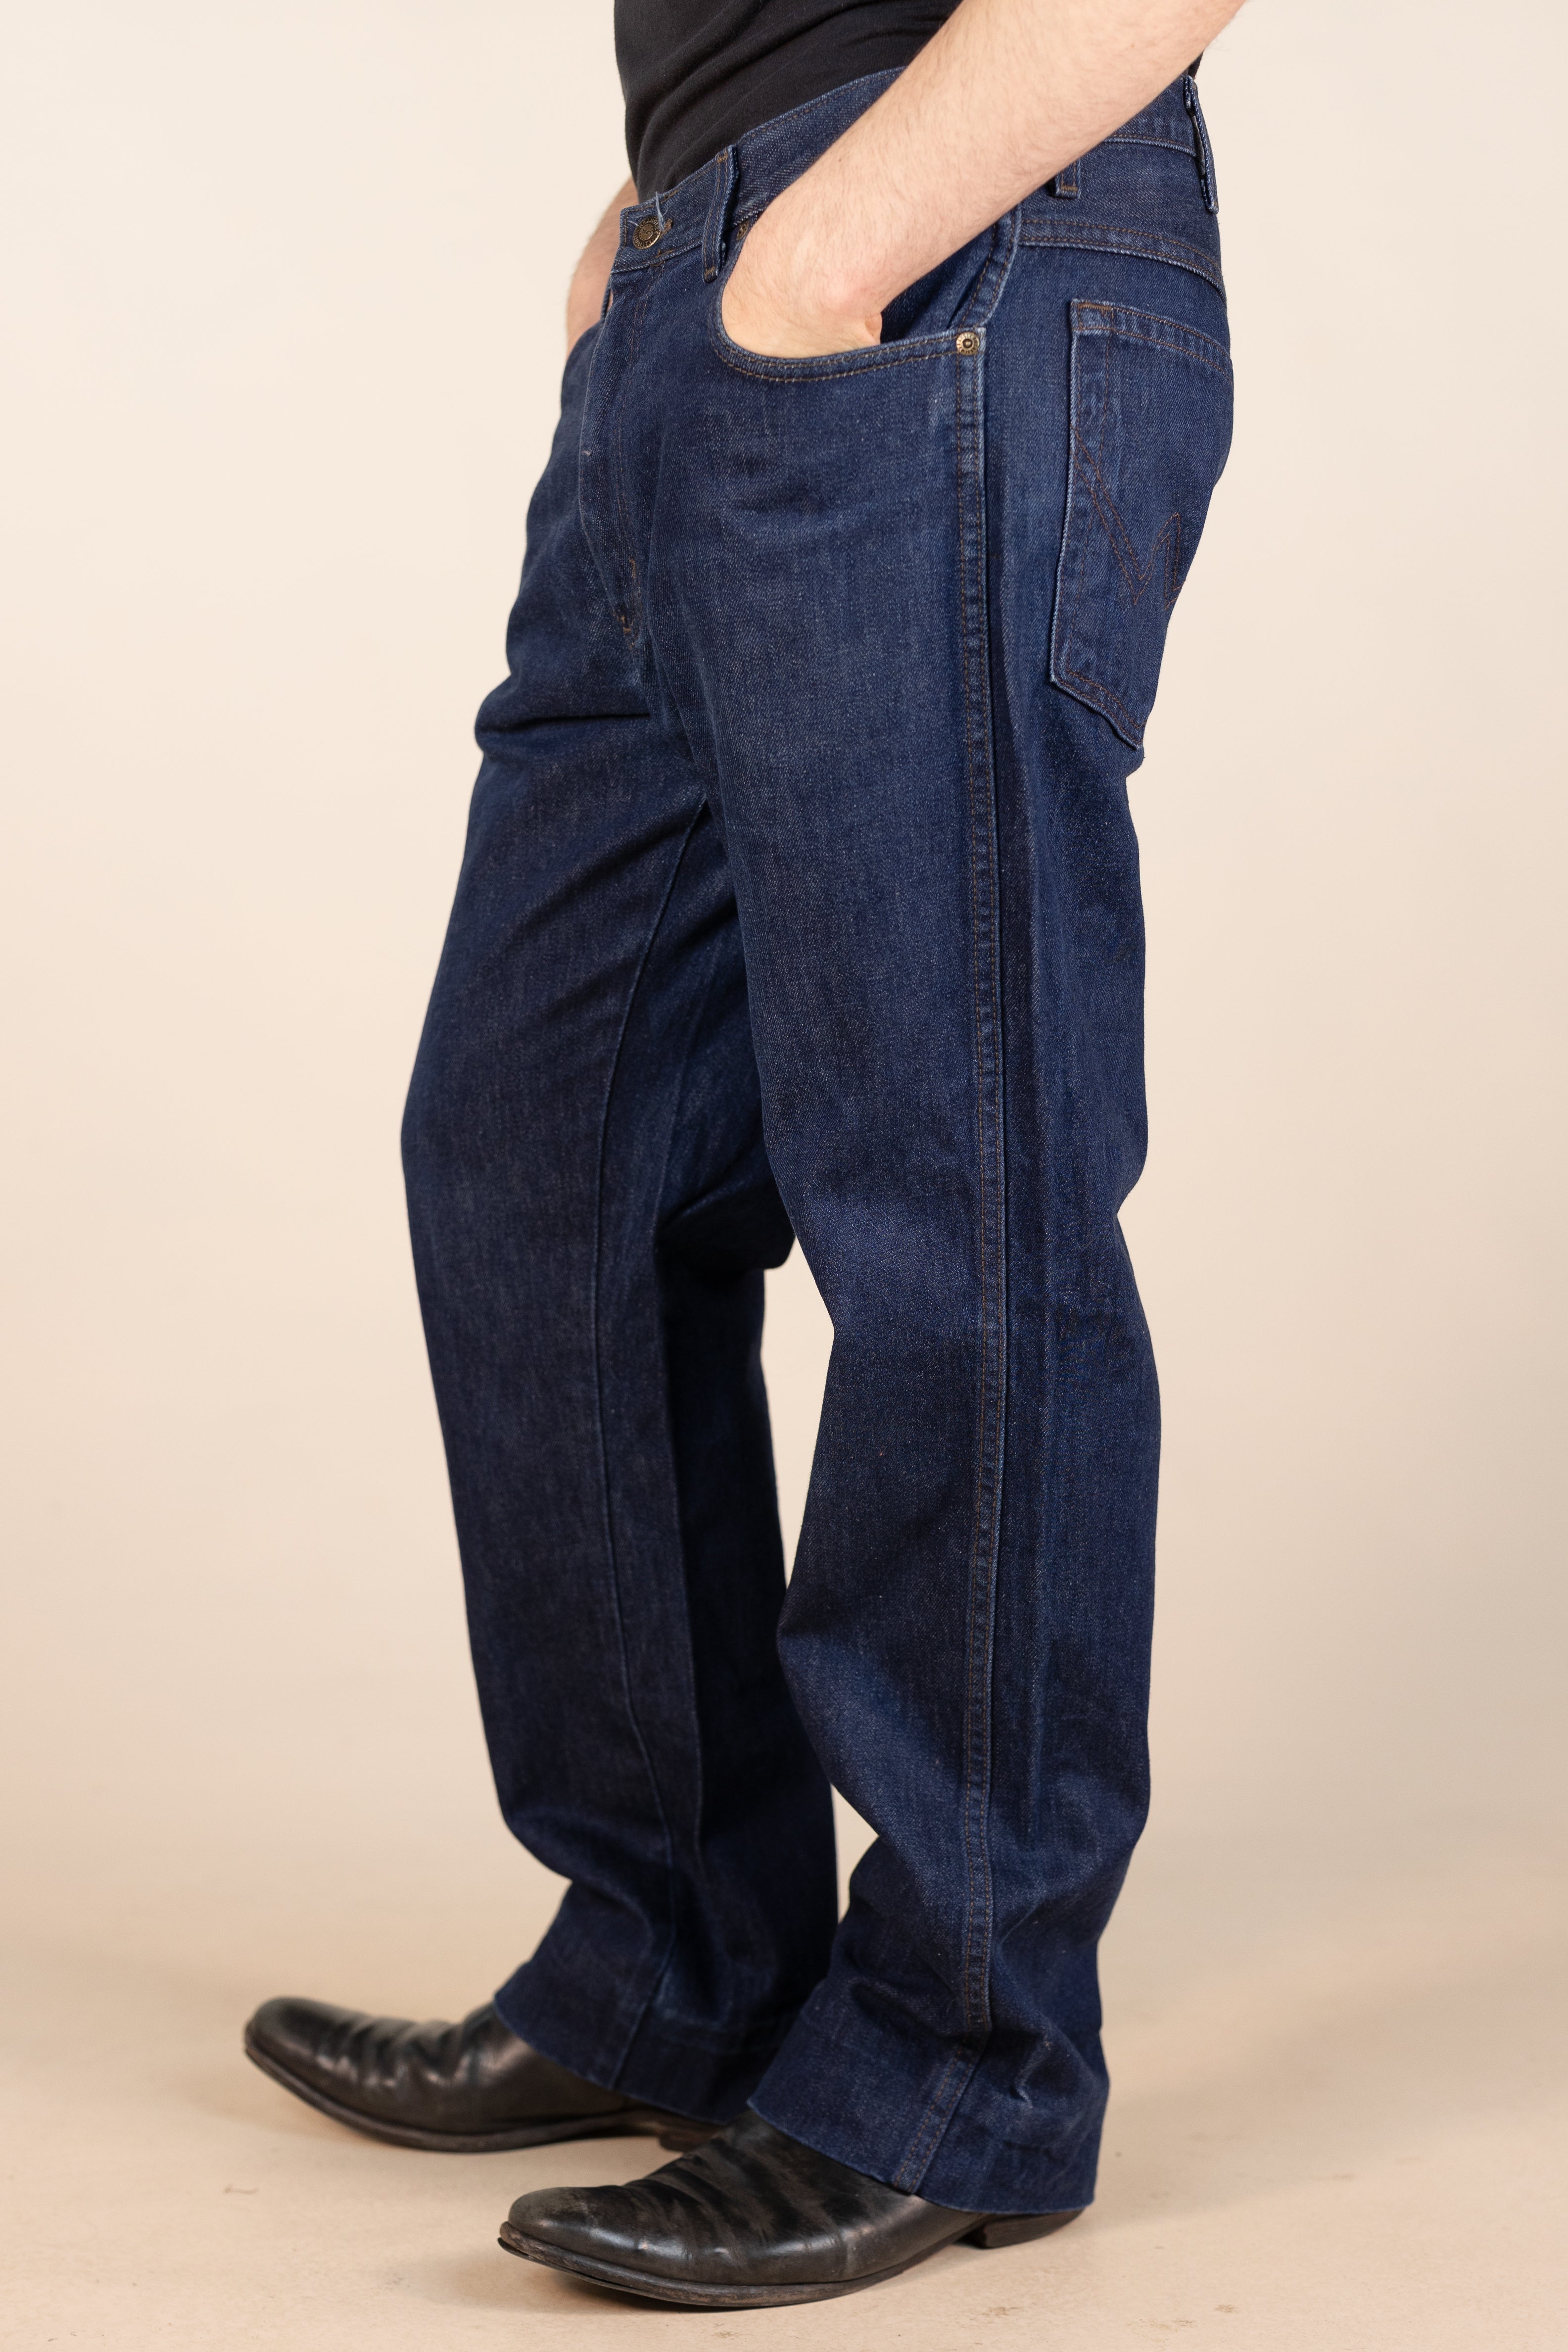 Wrangler 'Regular' Fit Jeans